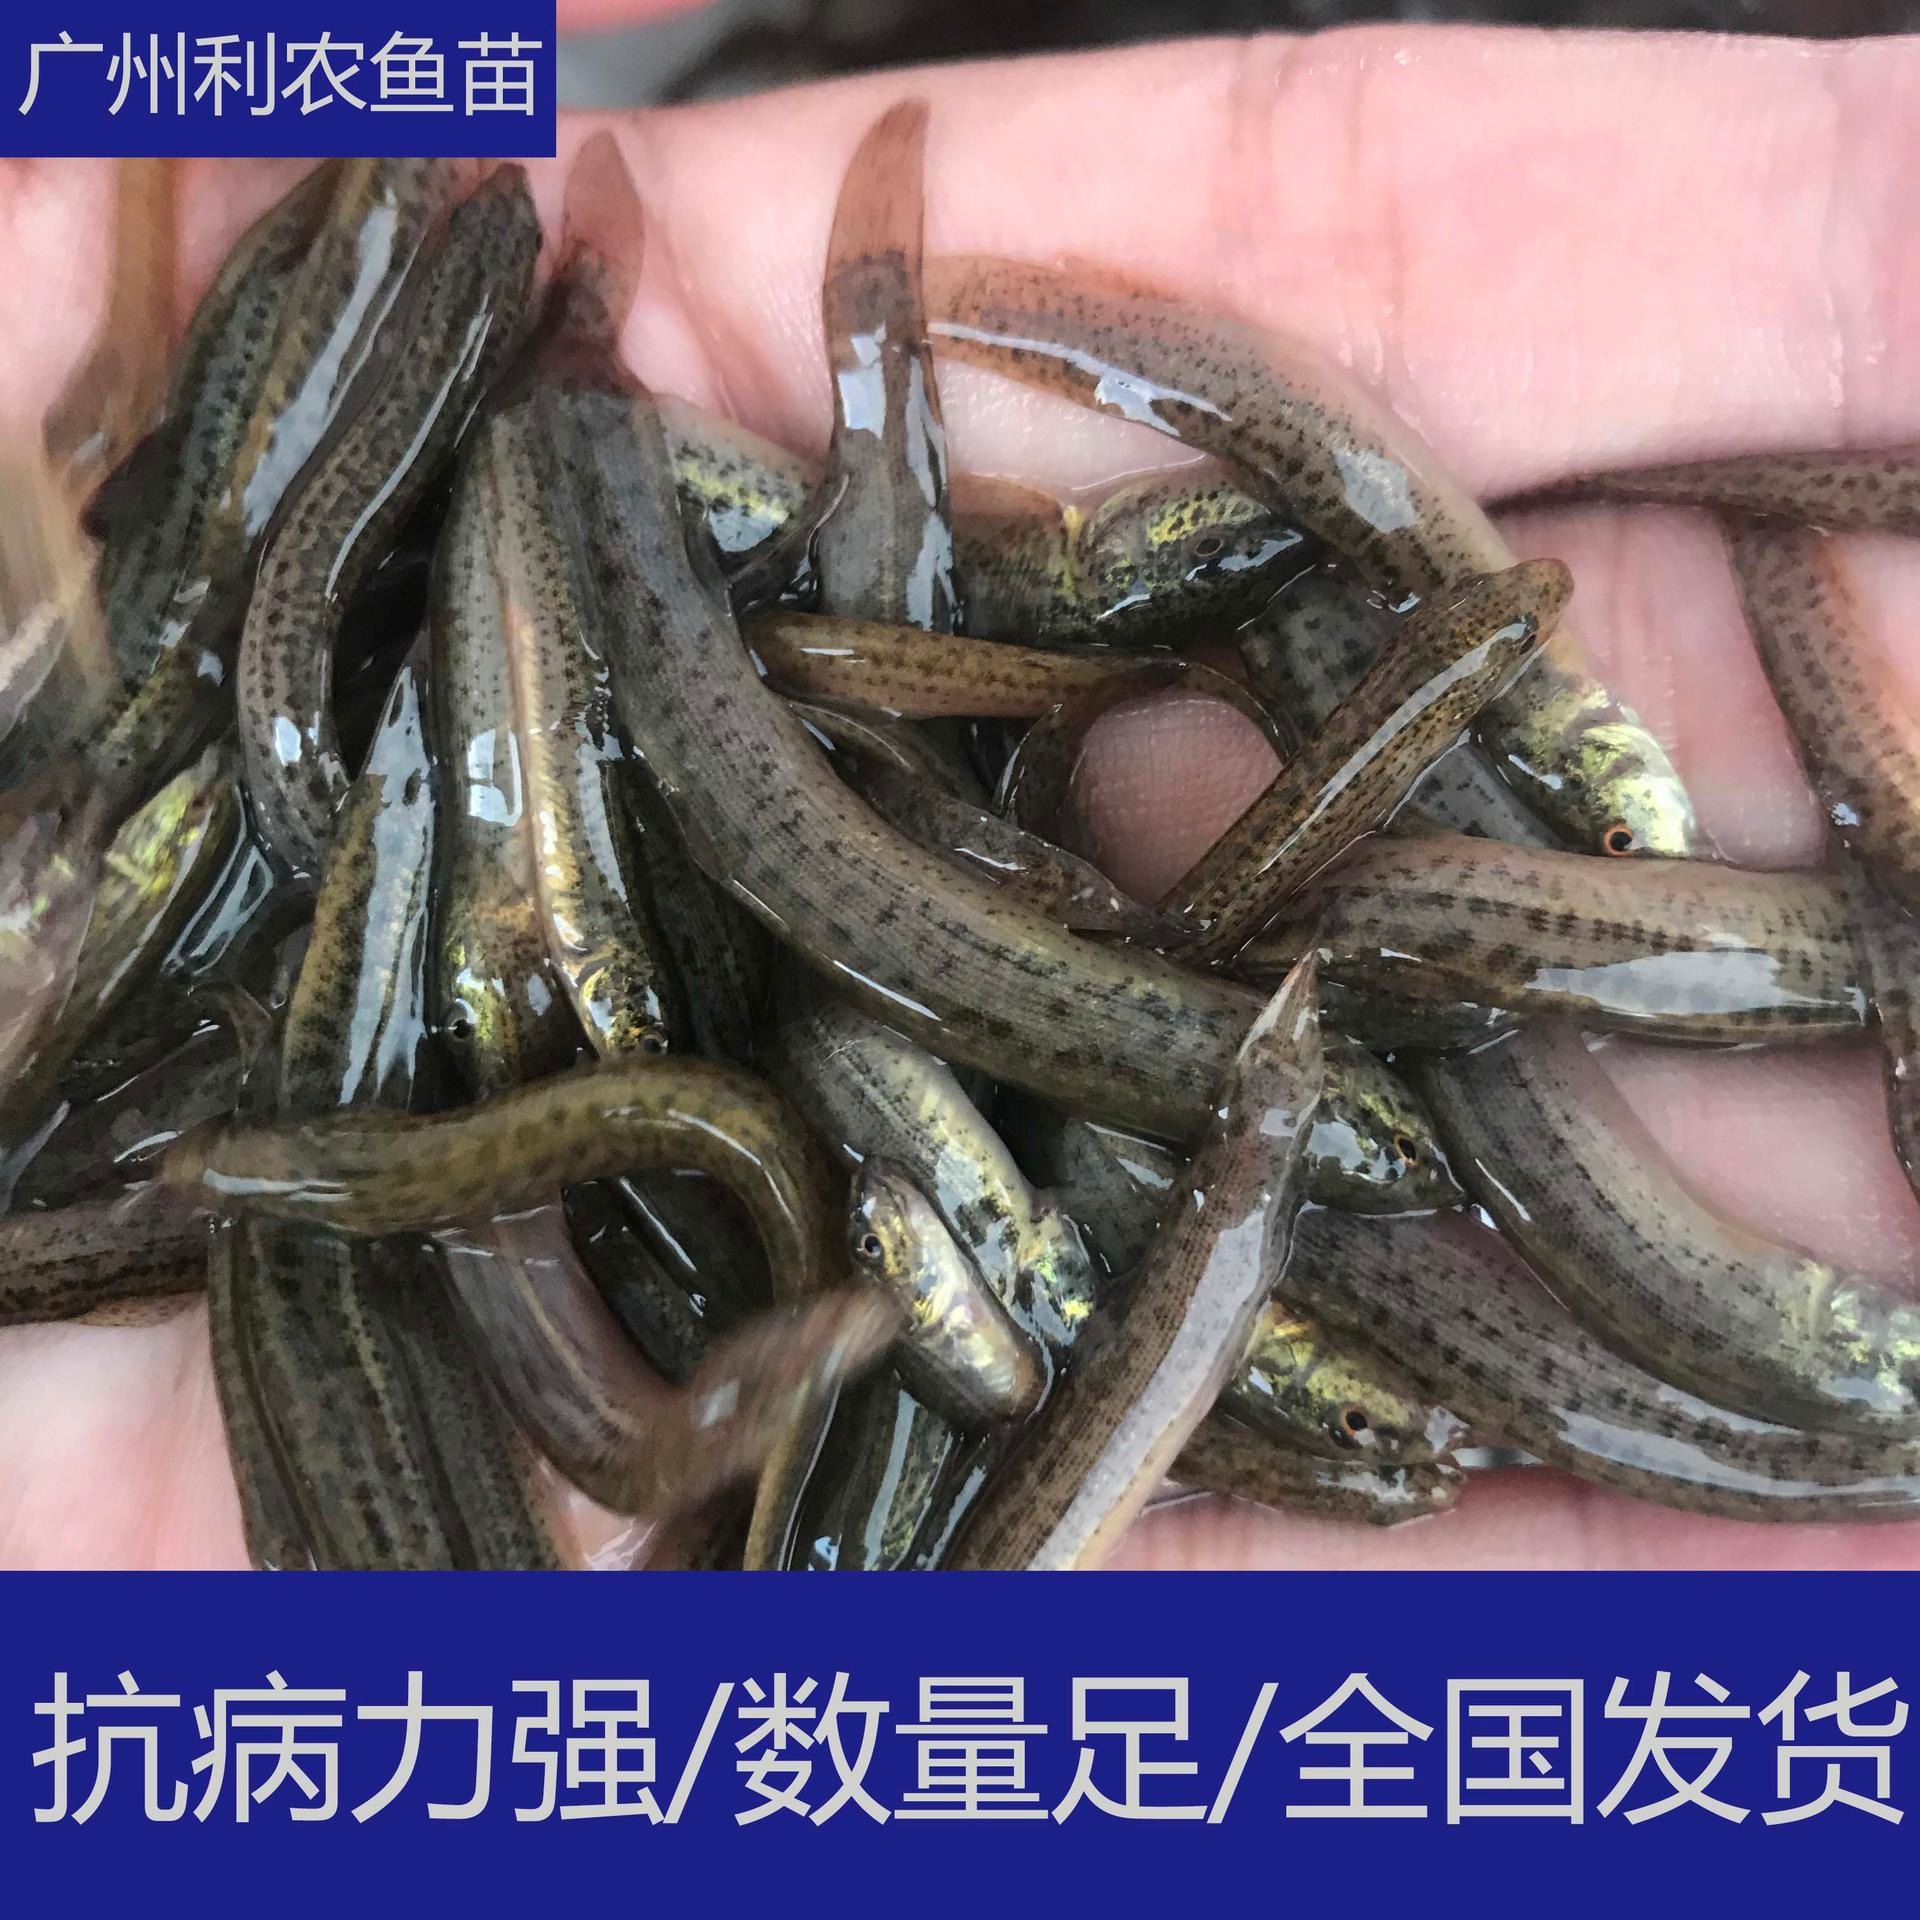 厂家直销 江西抚州纯种台湾大泥鳅苗 4-5cm台湾大泥鳅苗行情好